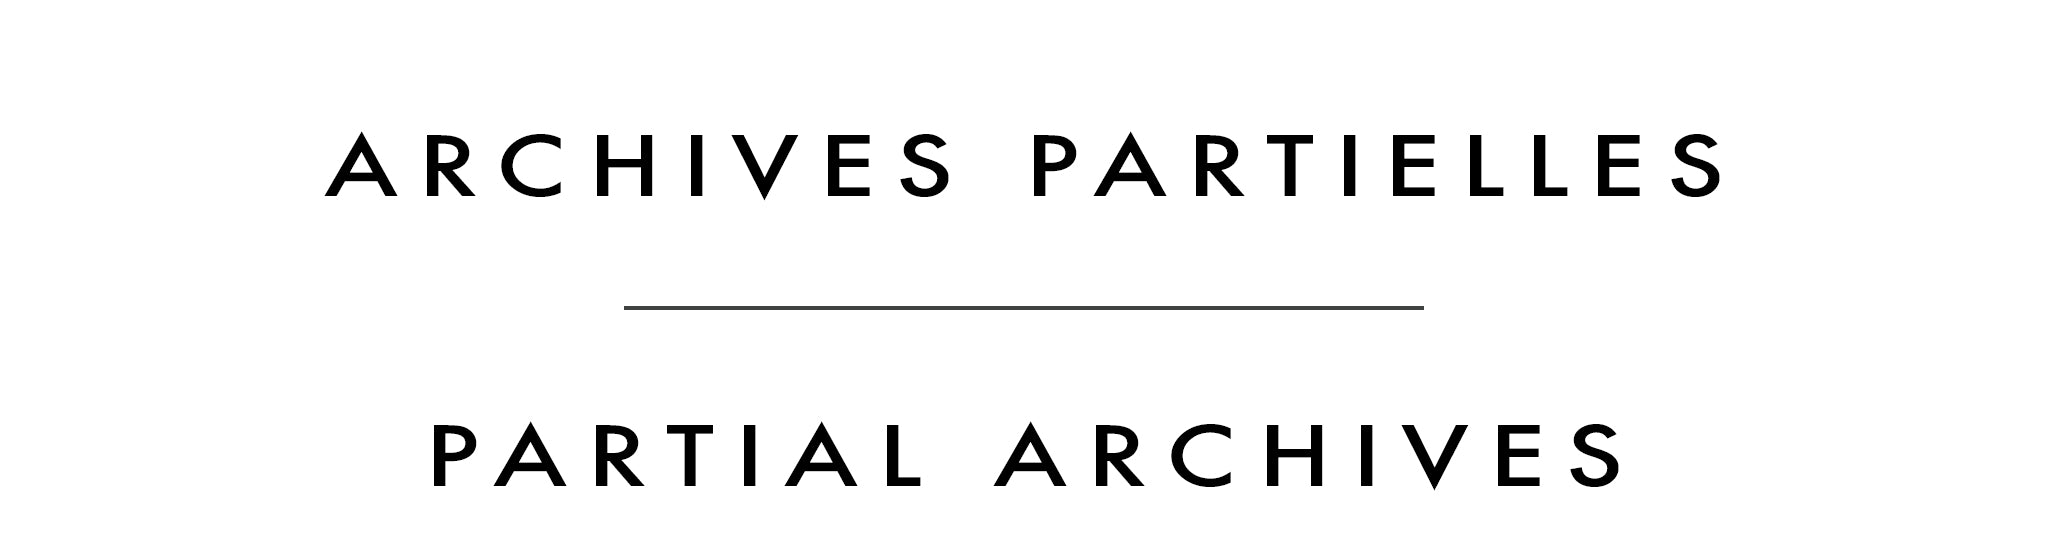 Archives partielles | Partial Archives | Shannon Ford